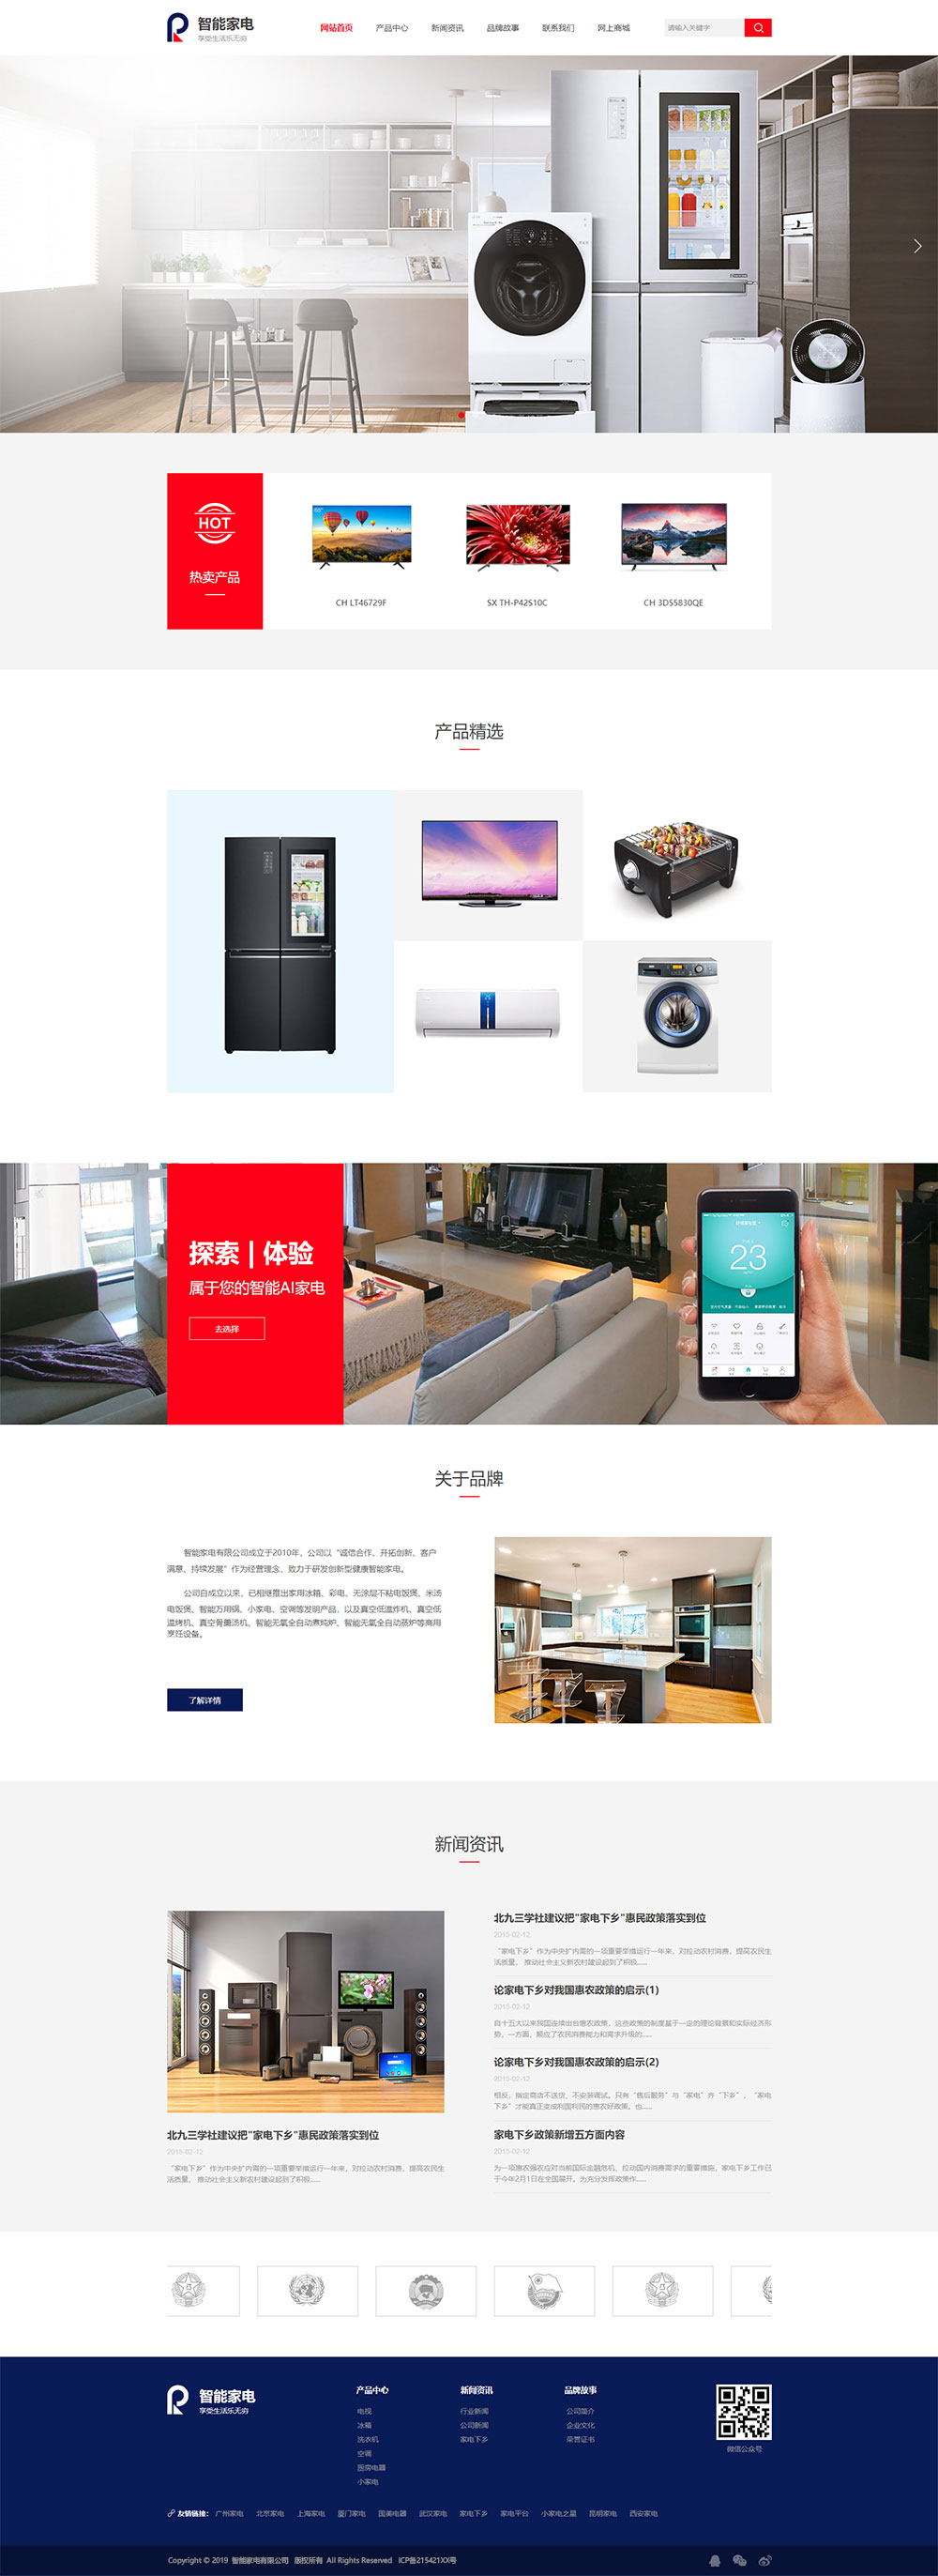 家电网站模板-appliances-216